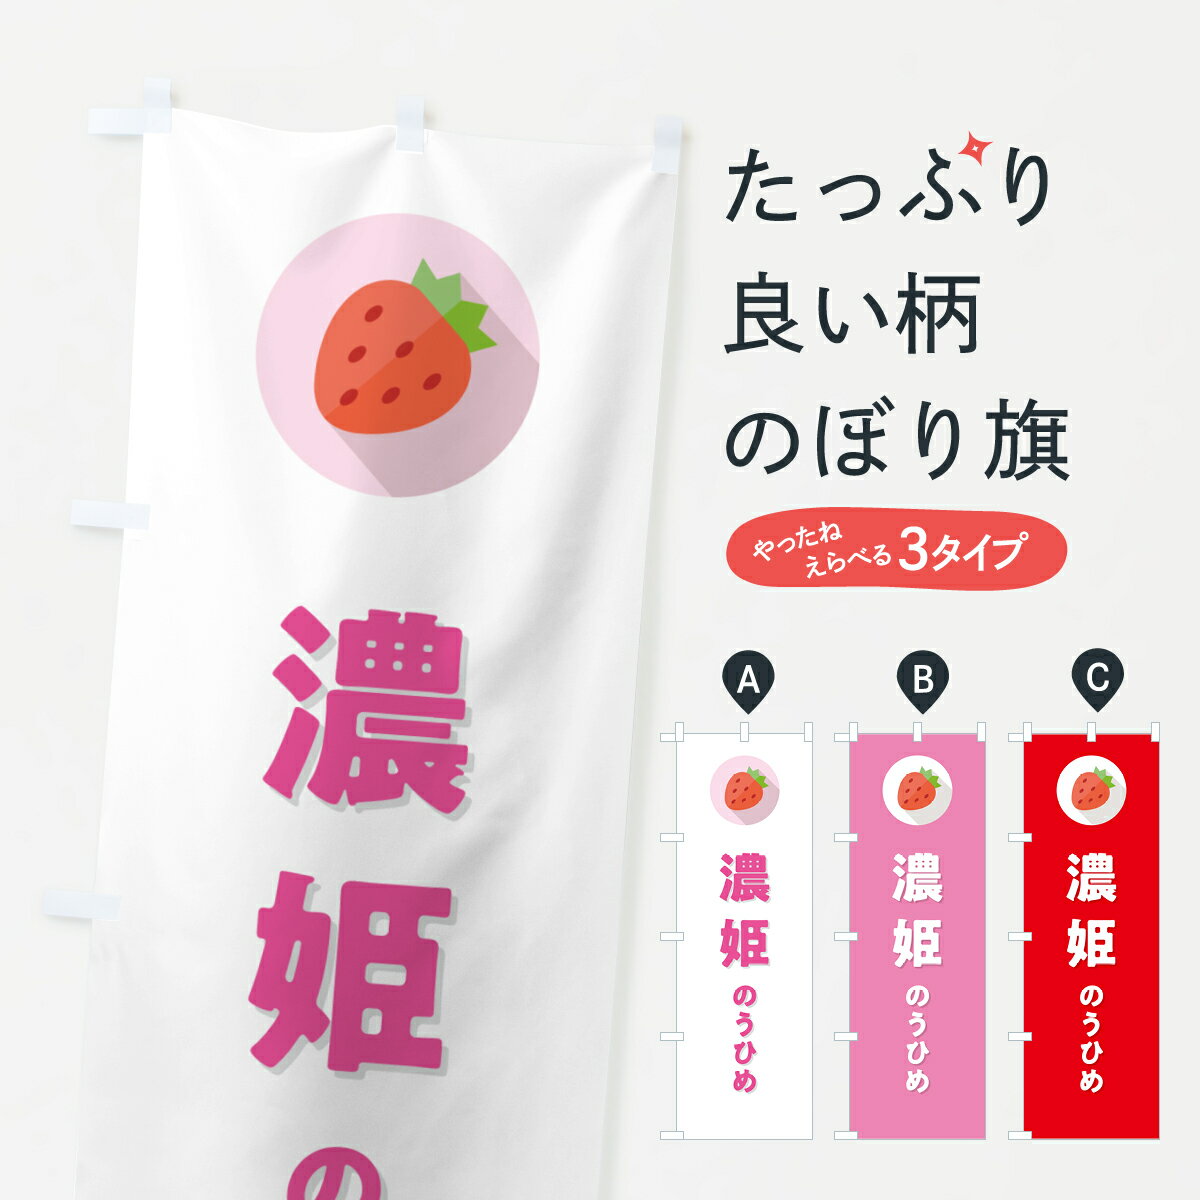 【ポスト便 送料360】 のぼり旗 濃姫のうひめ・いちご・品種のぼり NRR5 いちご・苺 グッズプロ